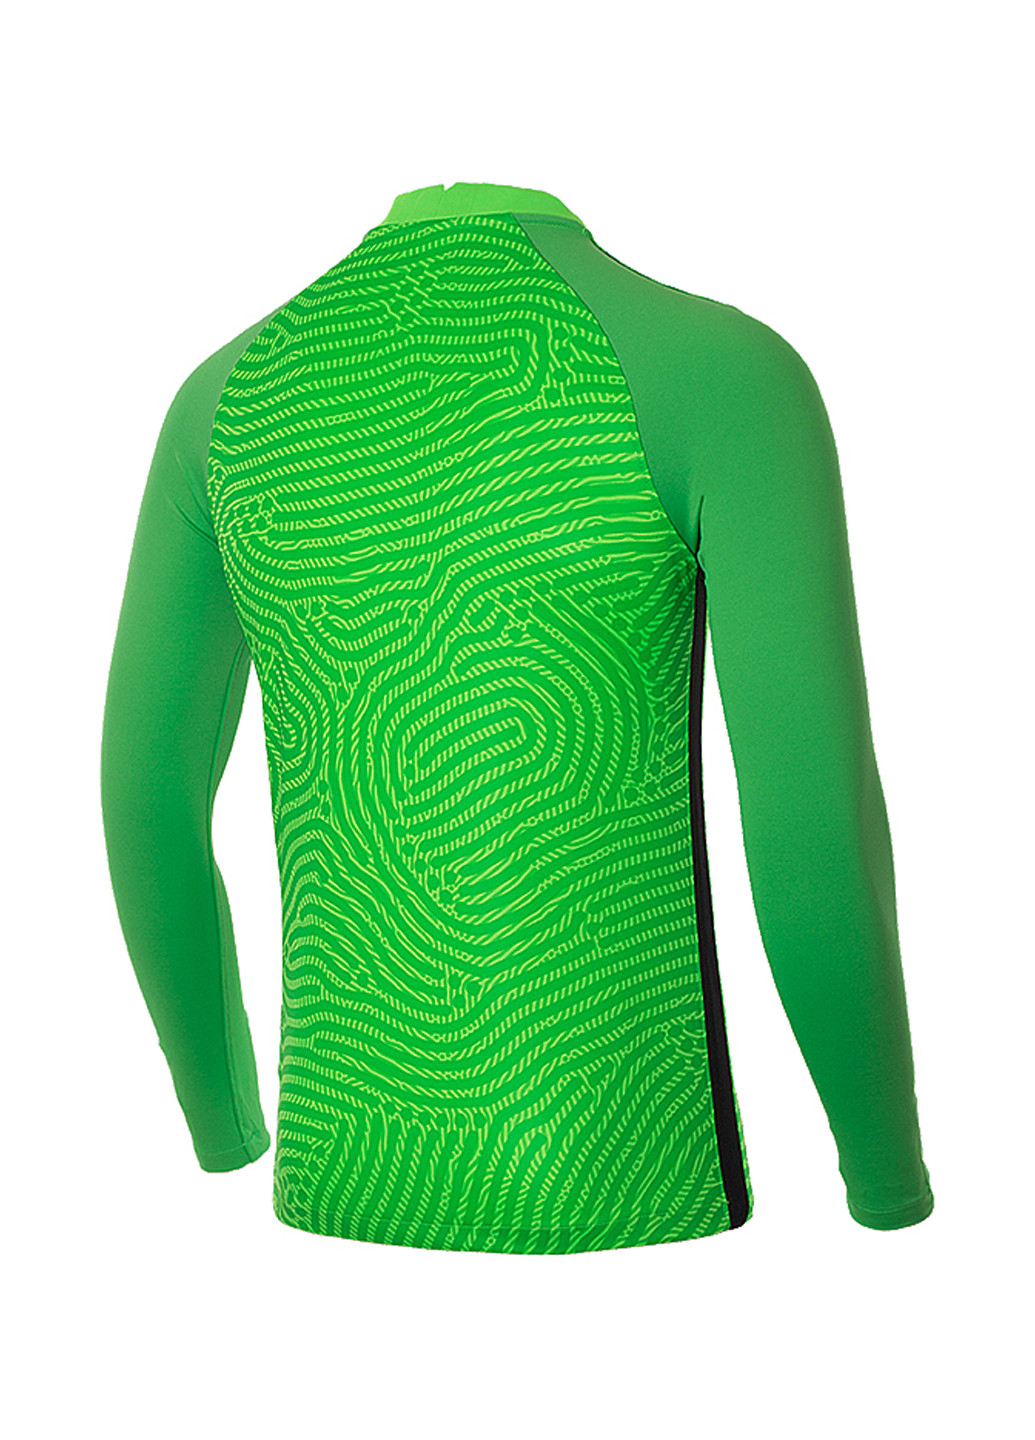 Зеленый демисезонный спортивный лонгслив Nike с абстрактным узором